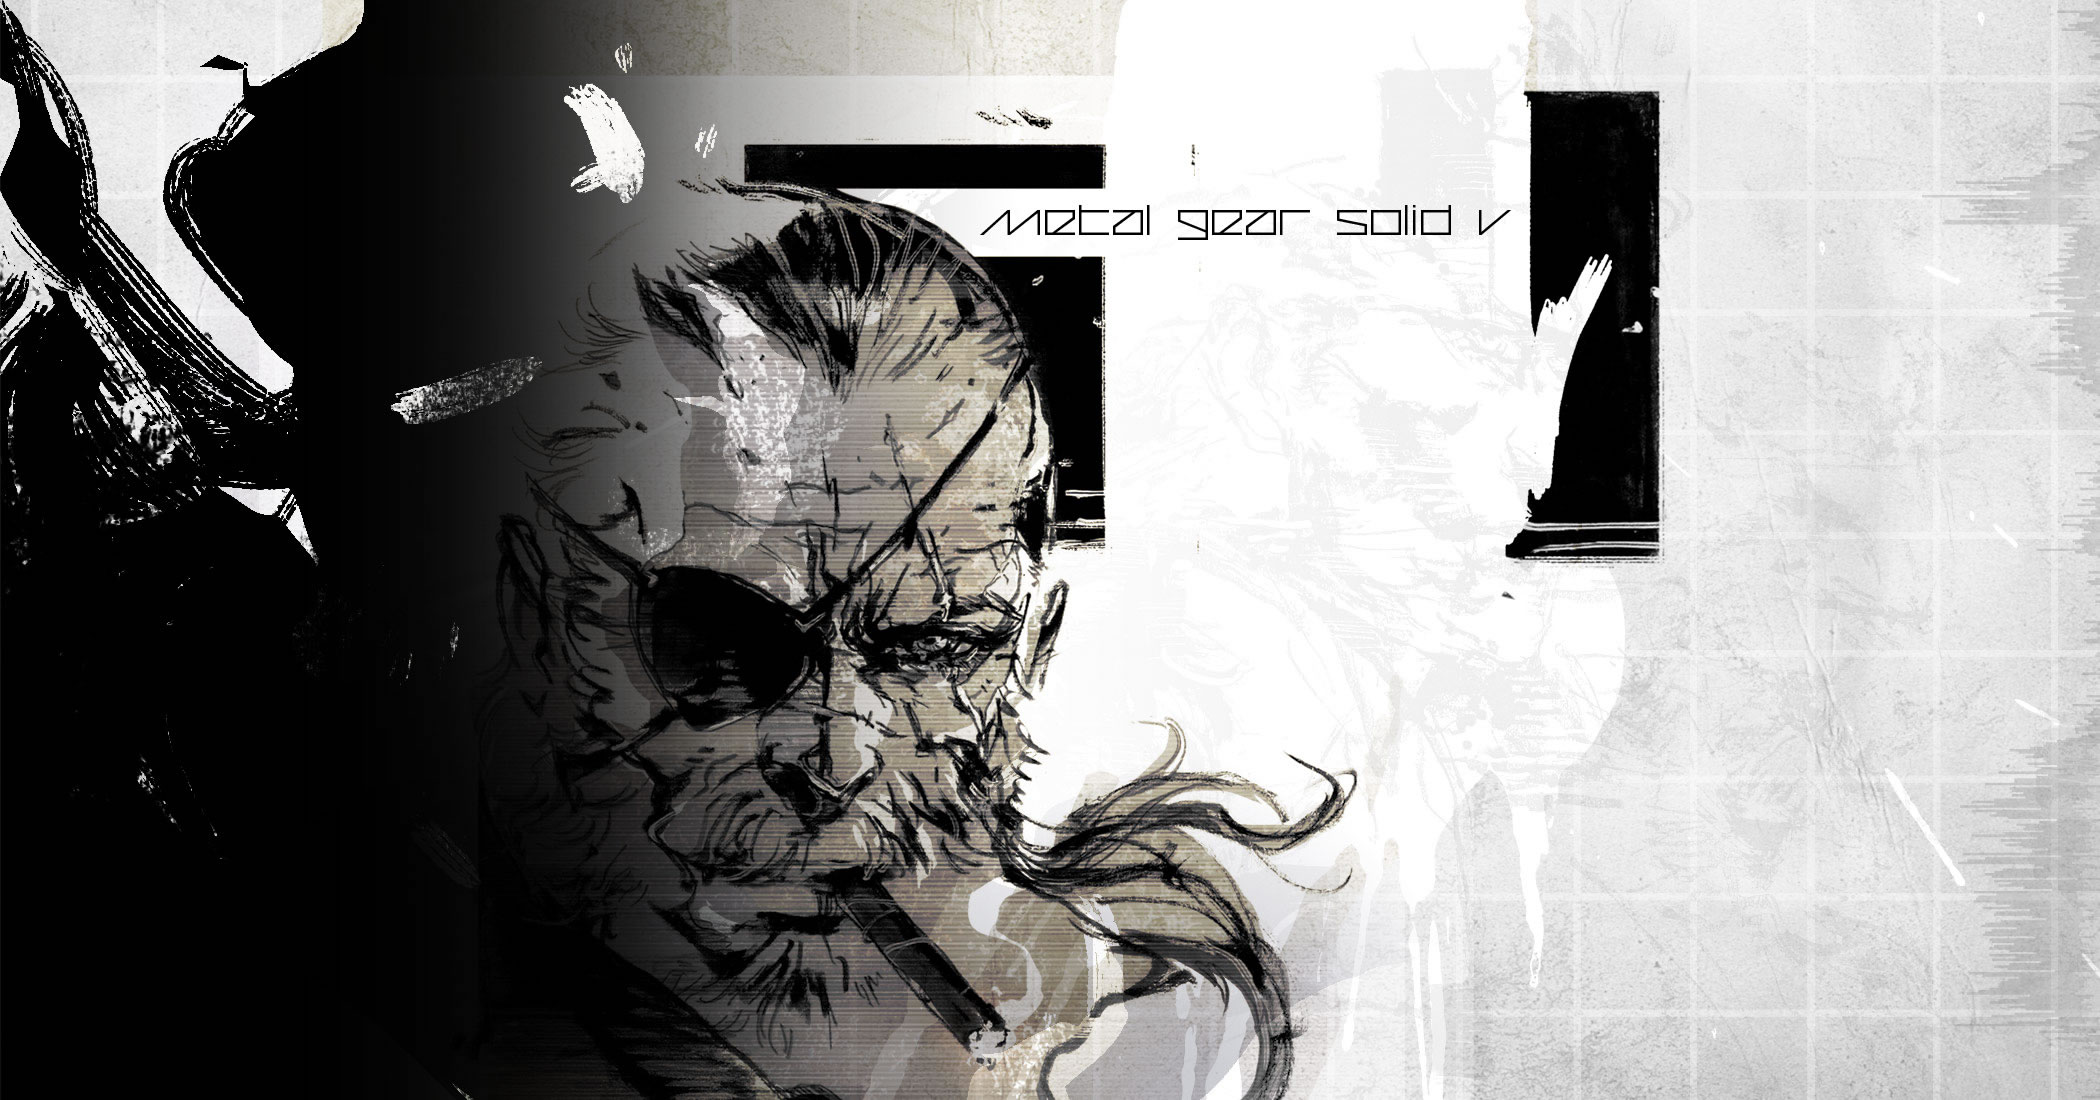 Artwork de Metal Gear Solid V : The Phantom Pain